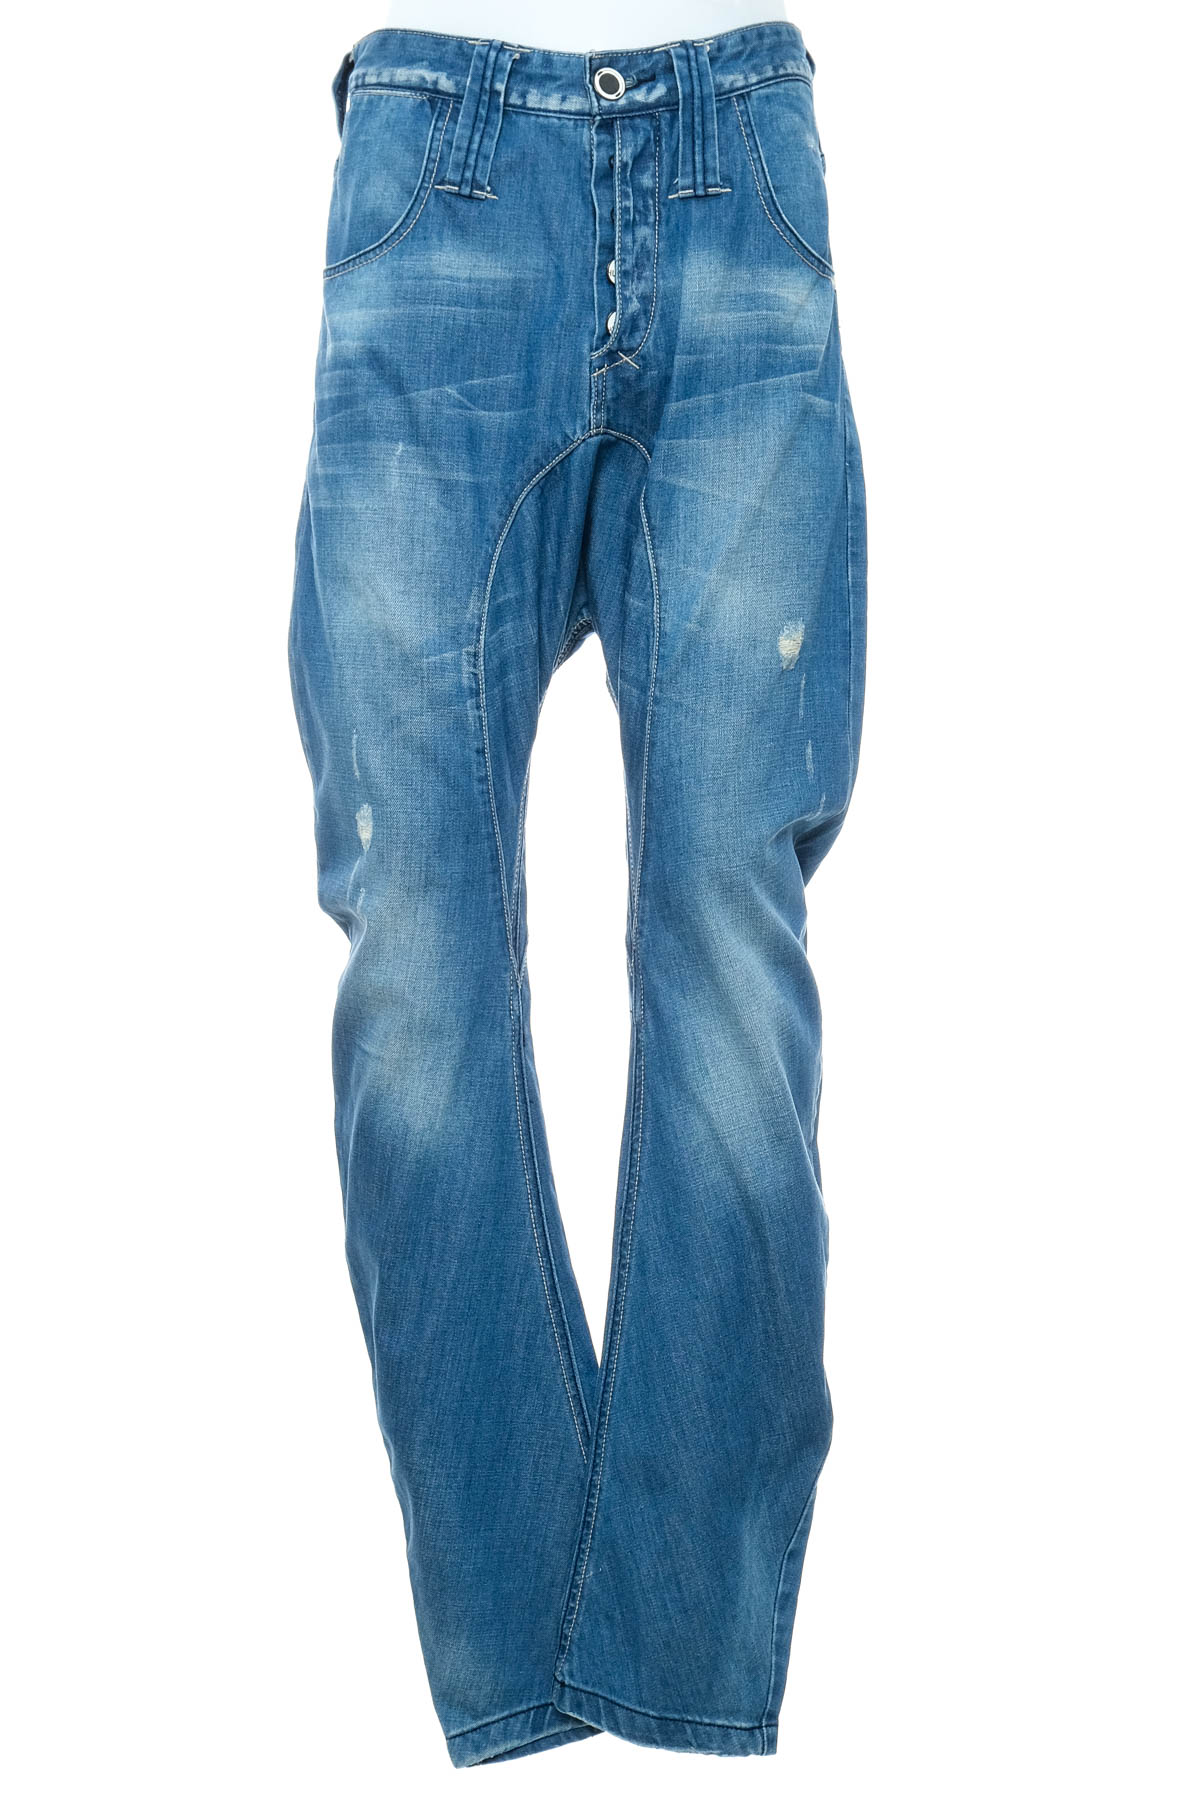 Men's jeans - HUMOR - 0